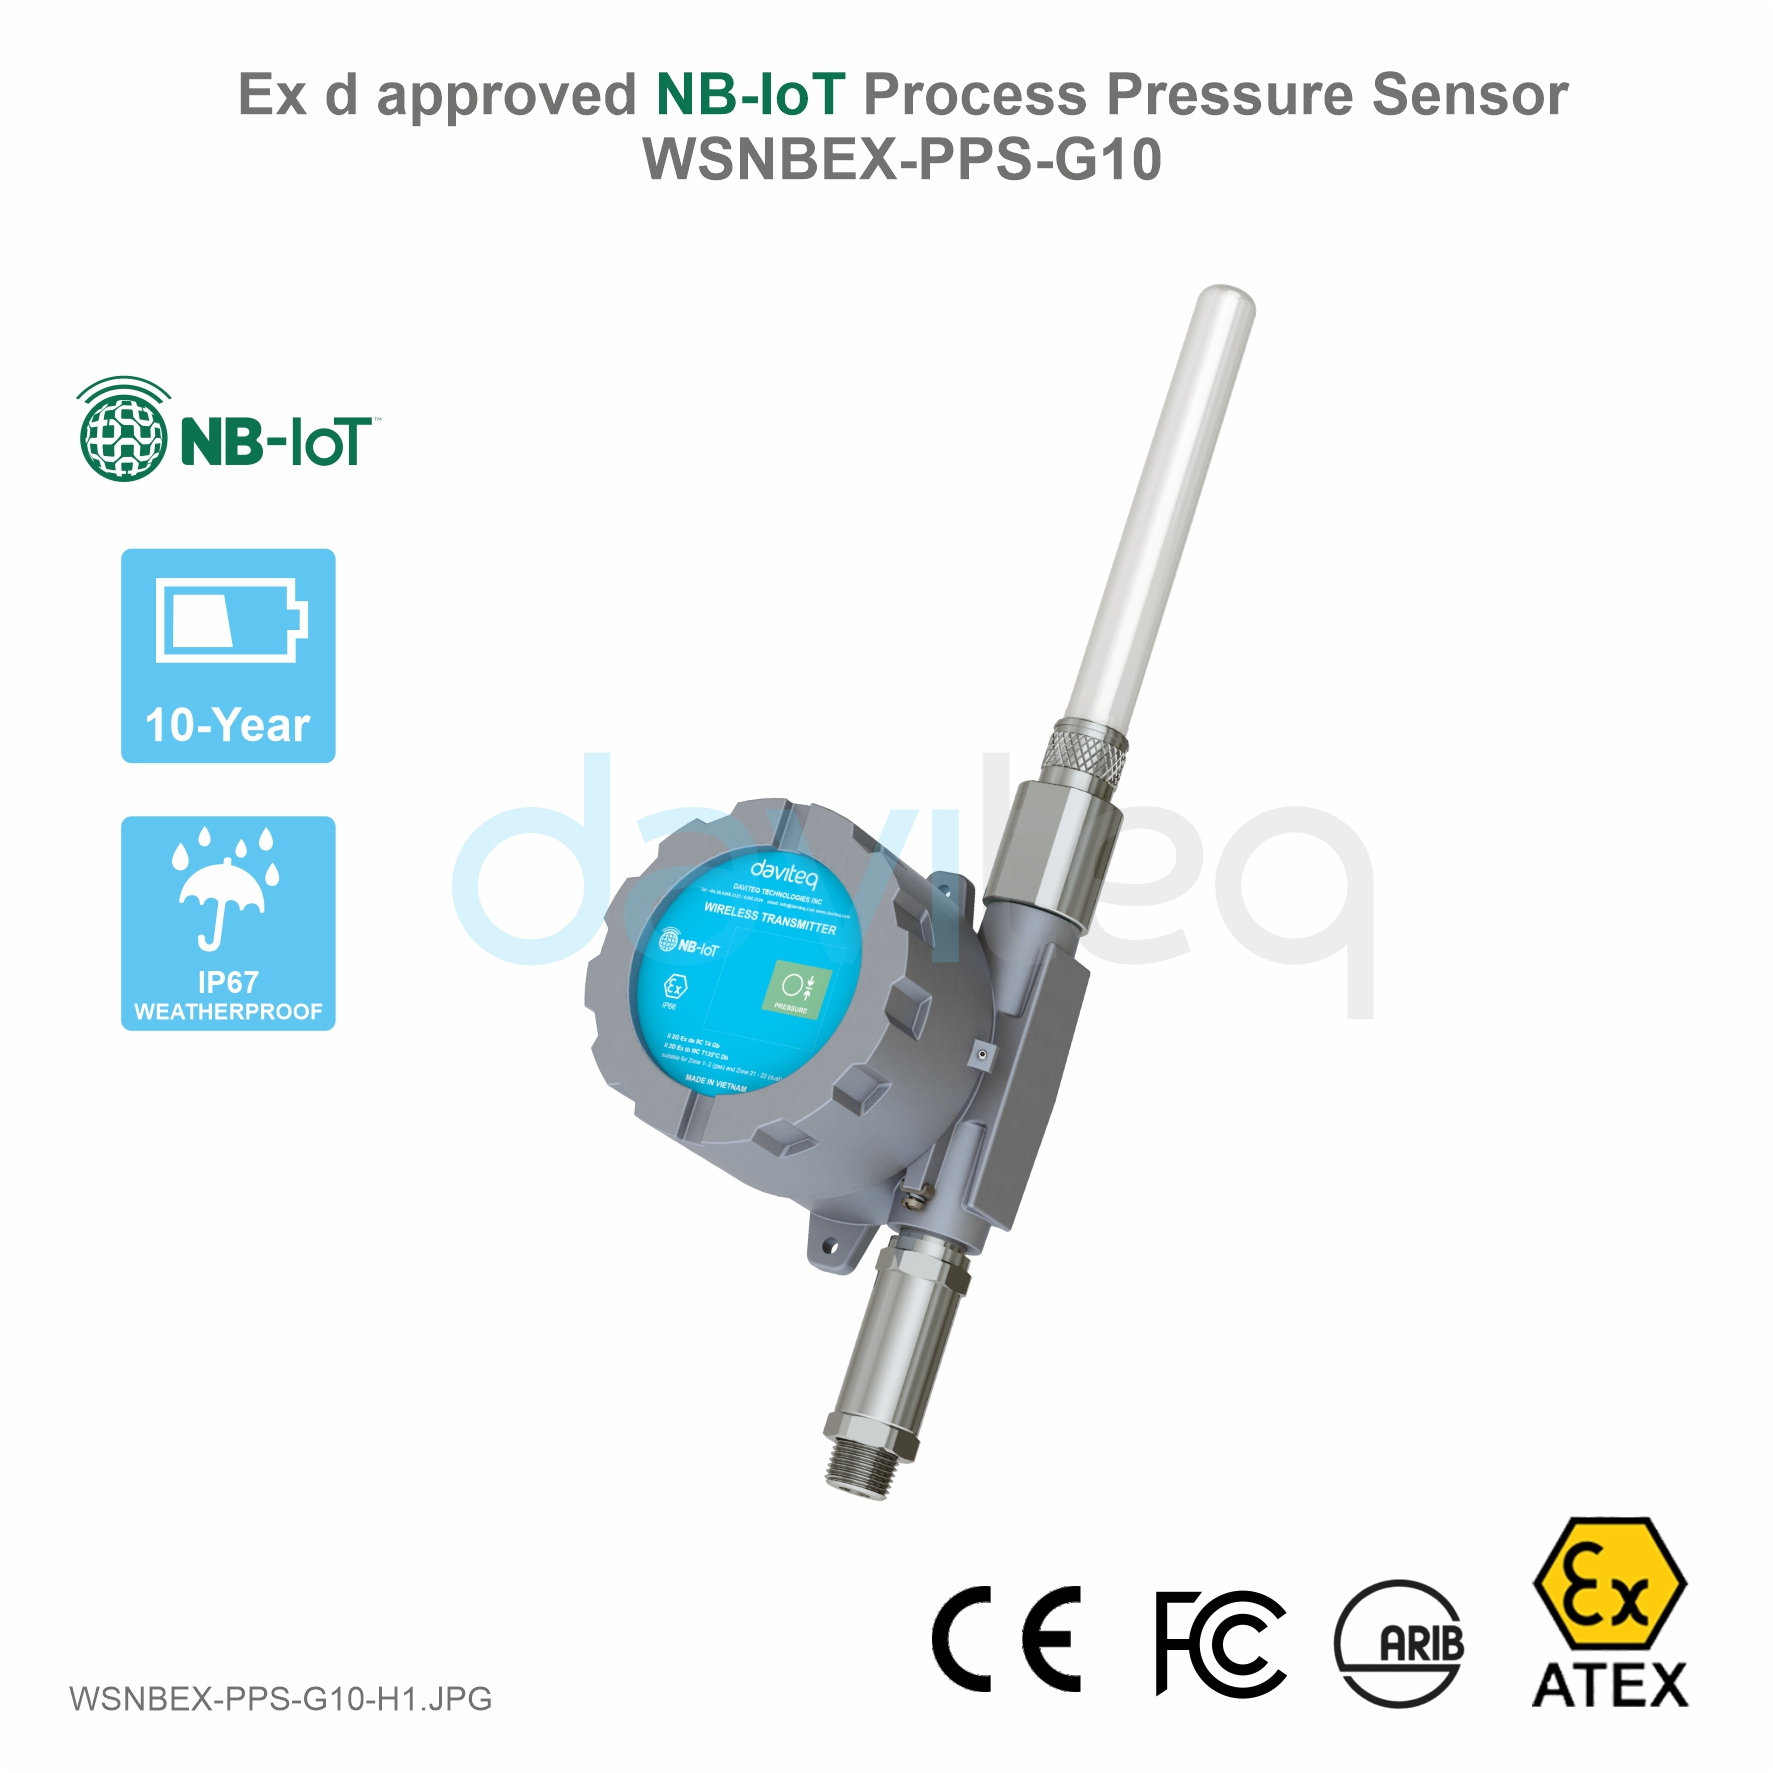 Ex d Approved NBIoT Process Pressure Sensor